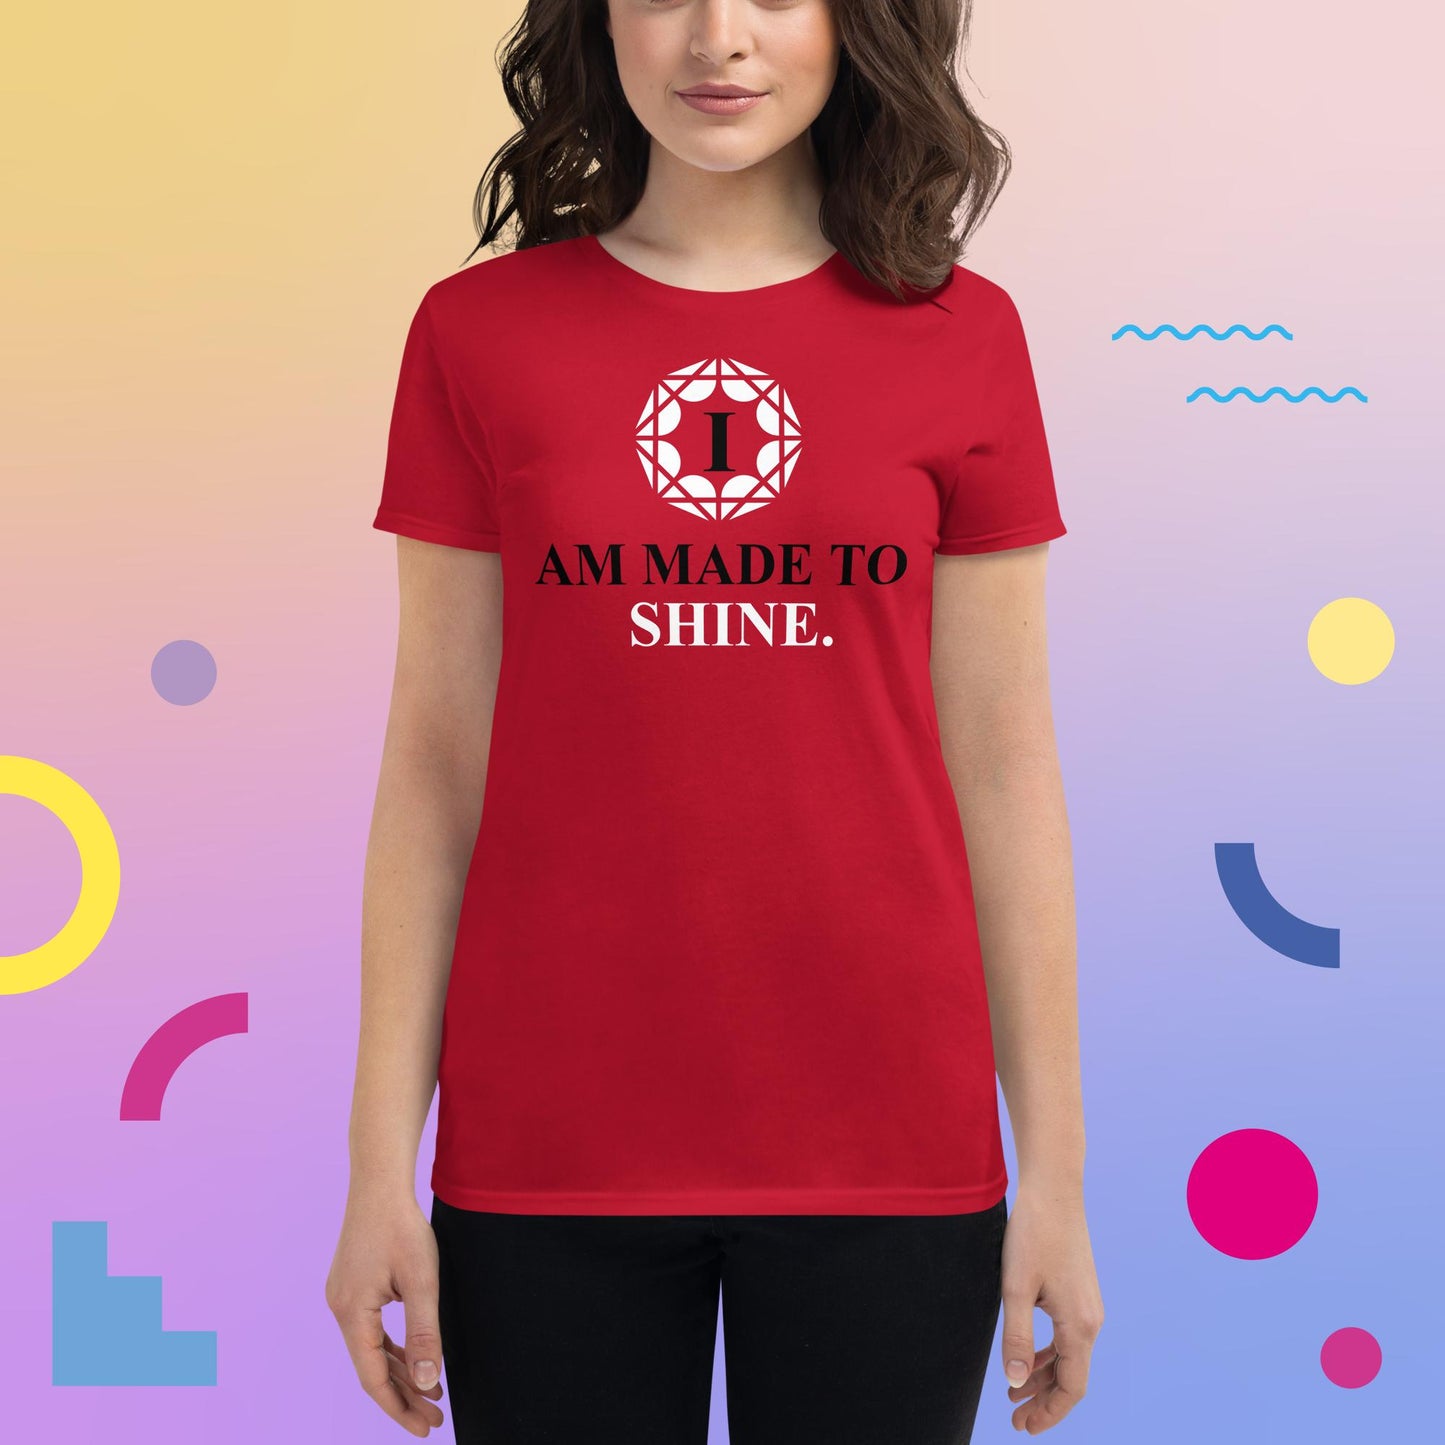 Celebration Mindset Exclusive: I Am Made To ShineWomen's short sleeve t-shirt